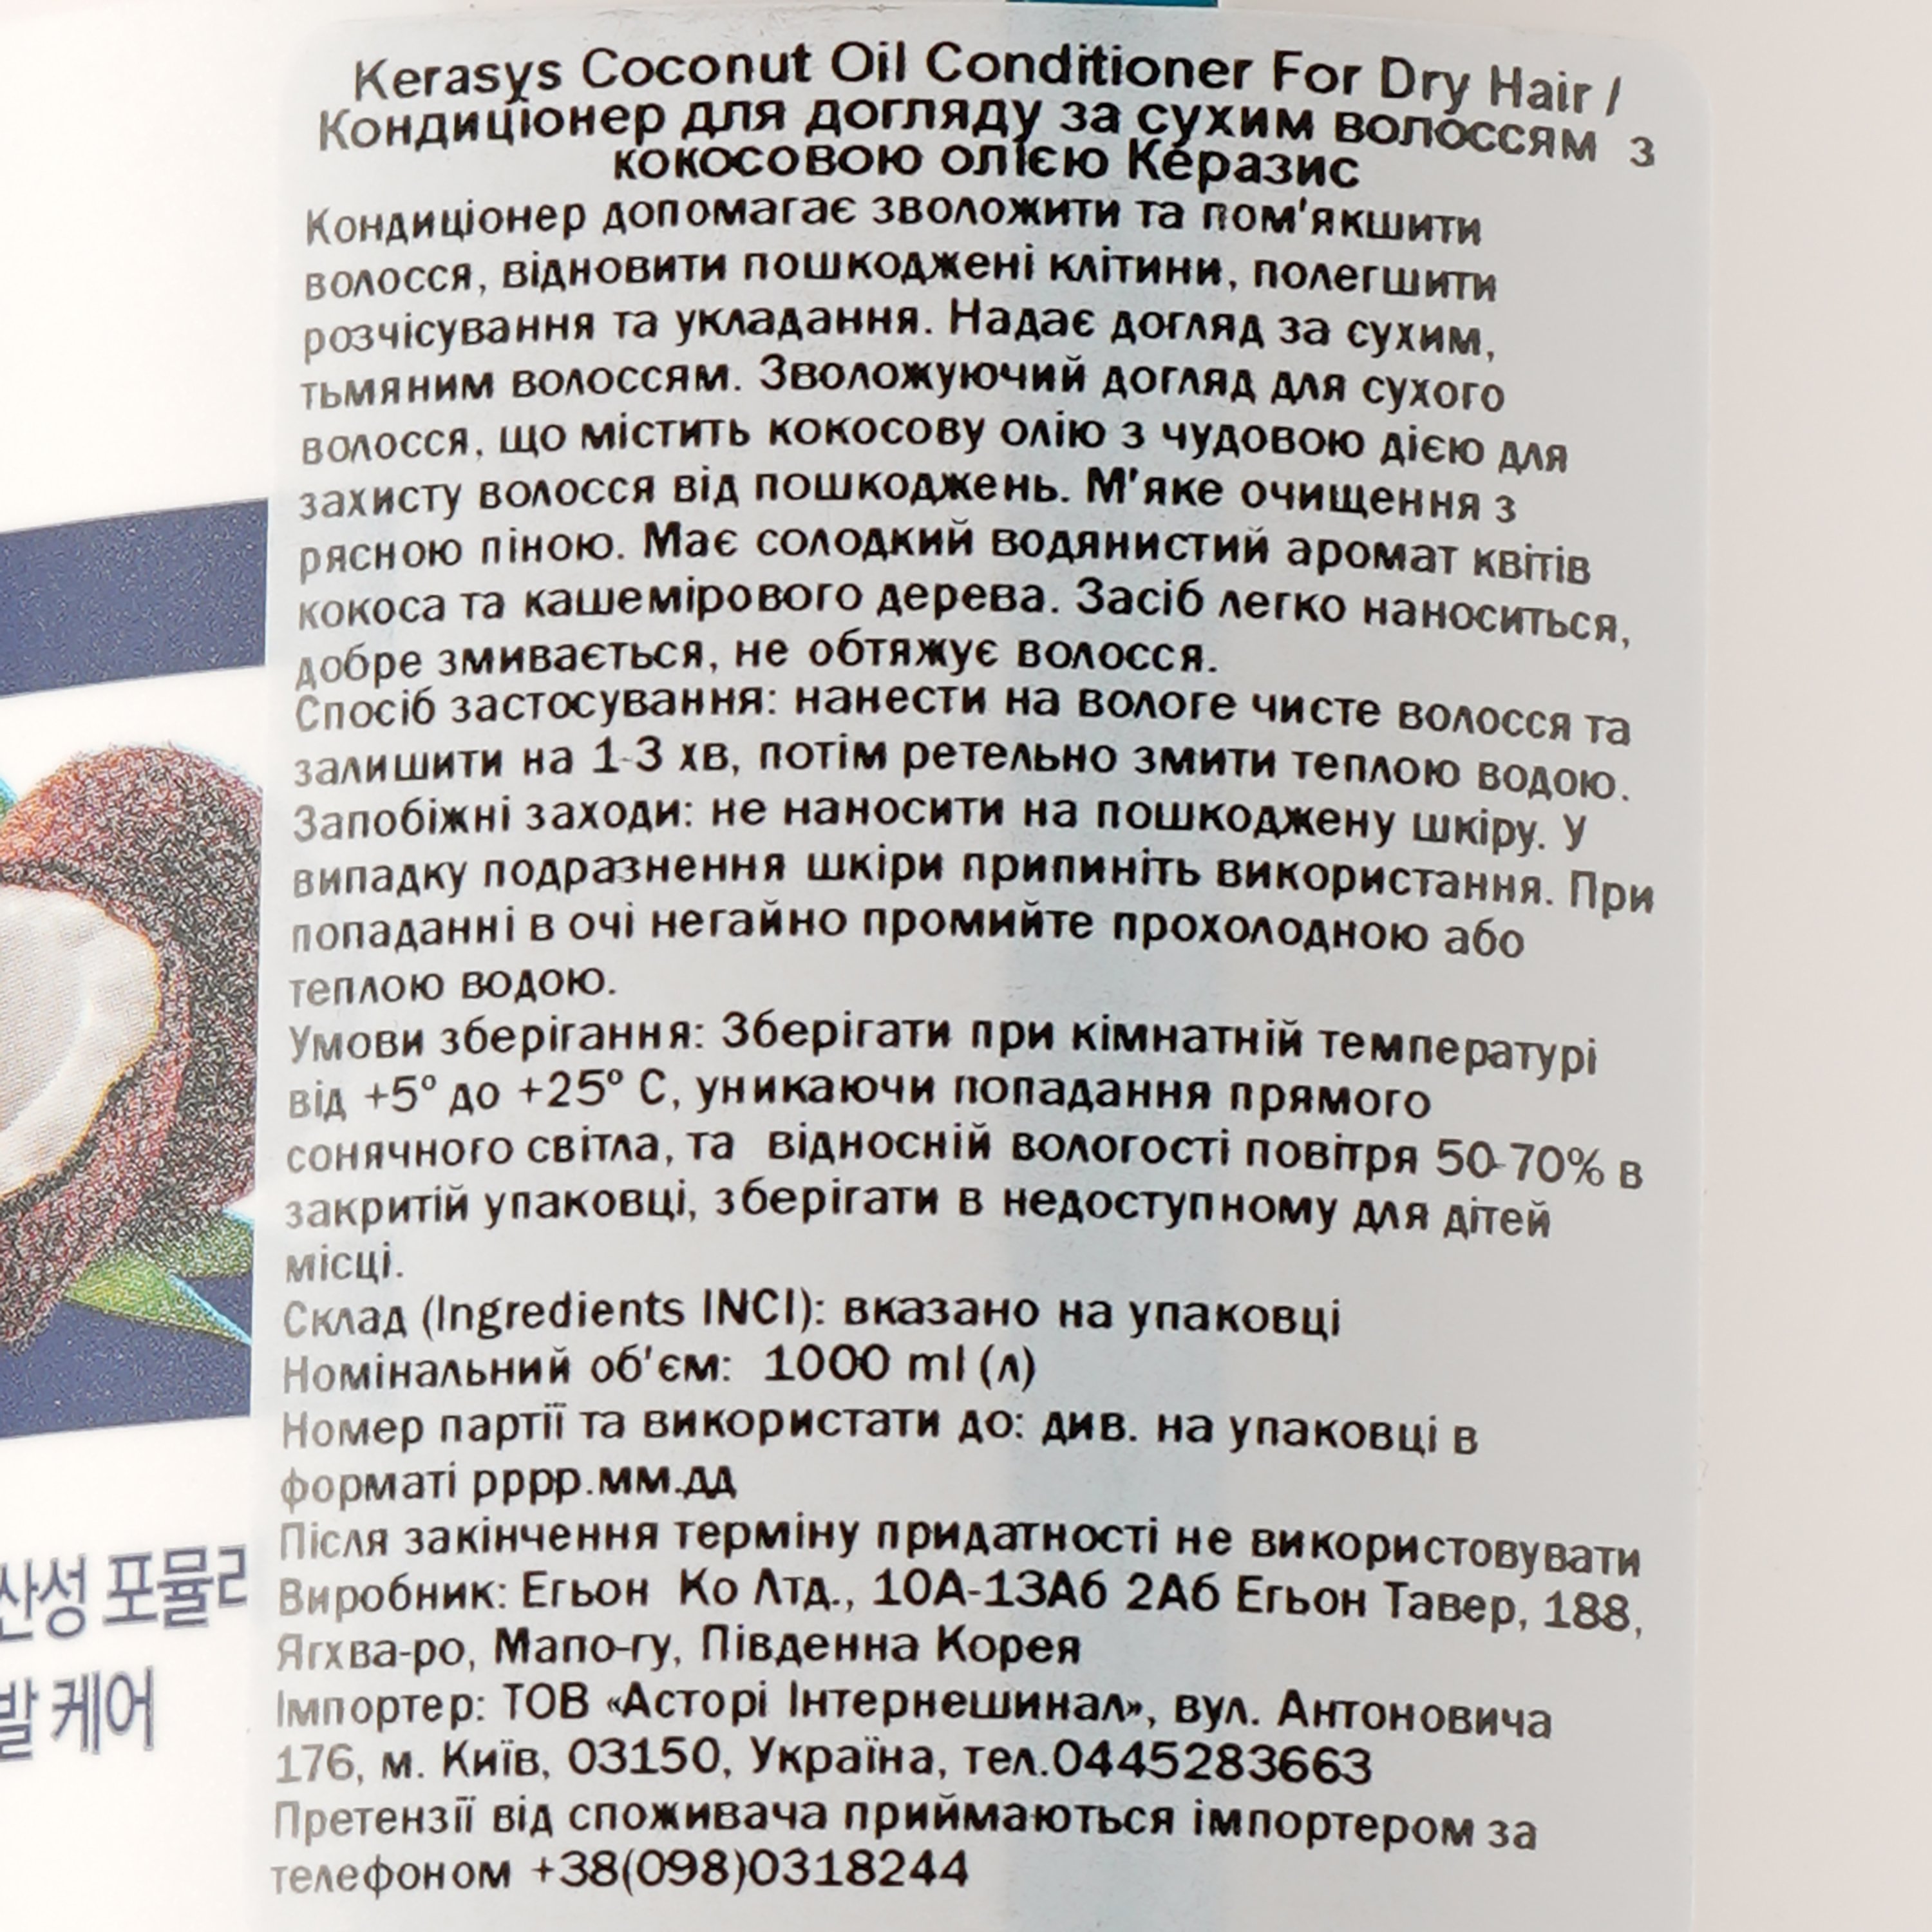 Кондиціонер для догляду за сухим волоссям Kerasys Coconut Oil Conditioner For Dry Hair з кокосовим маслом, 1000 мл - фото 3